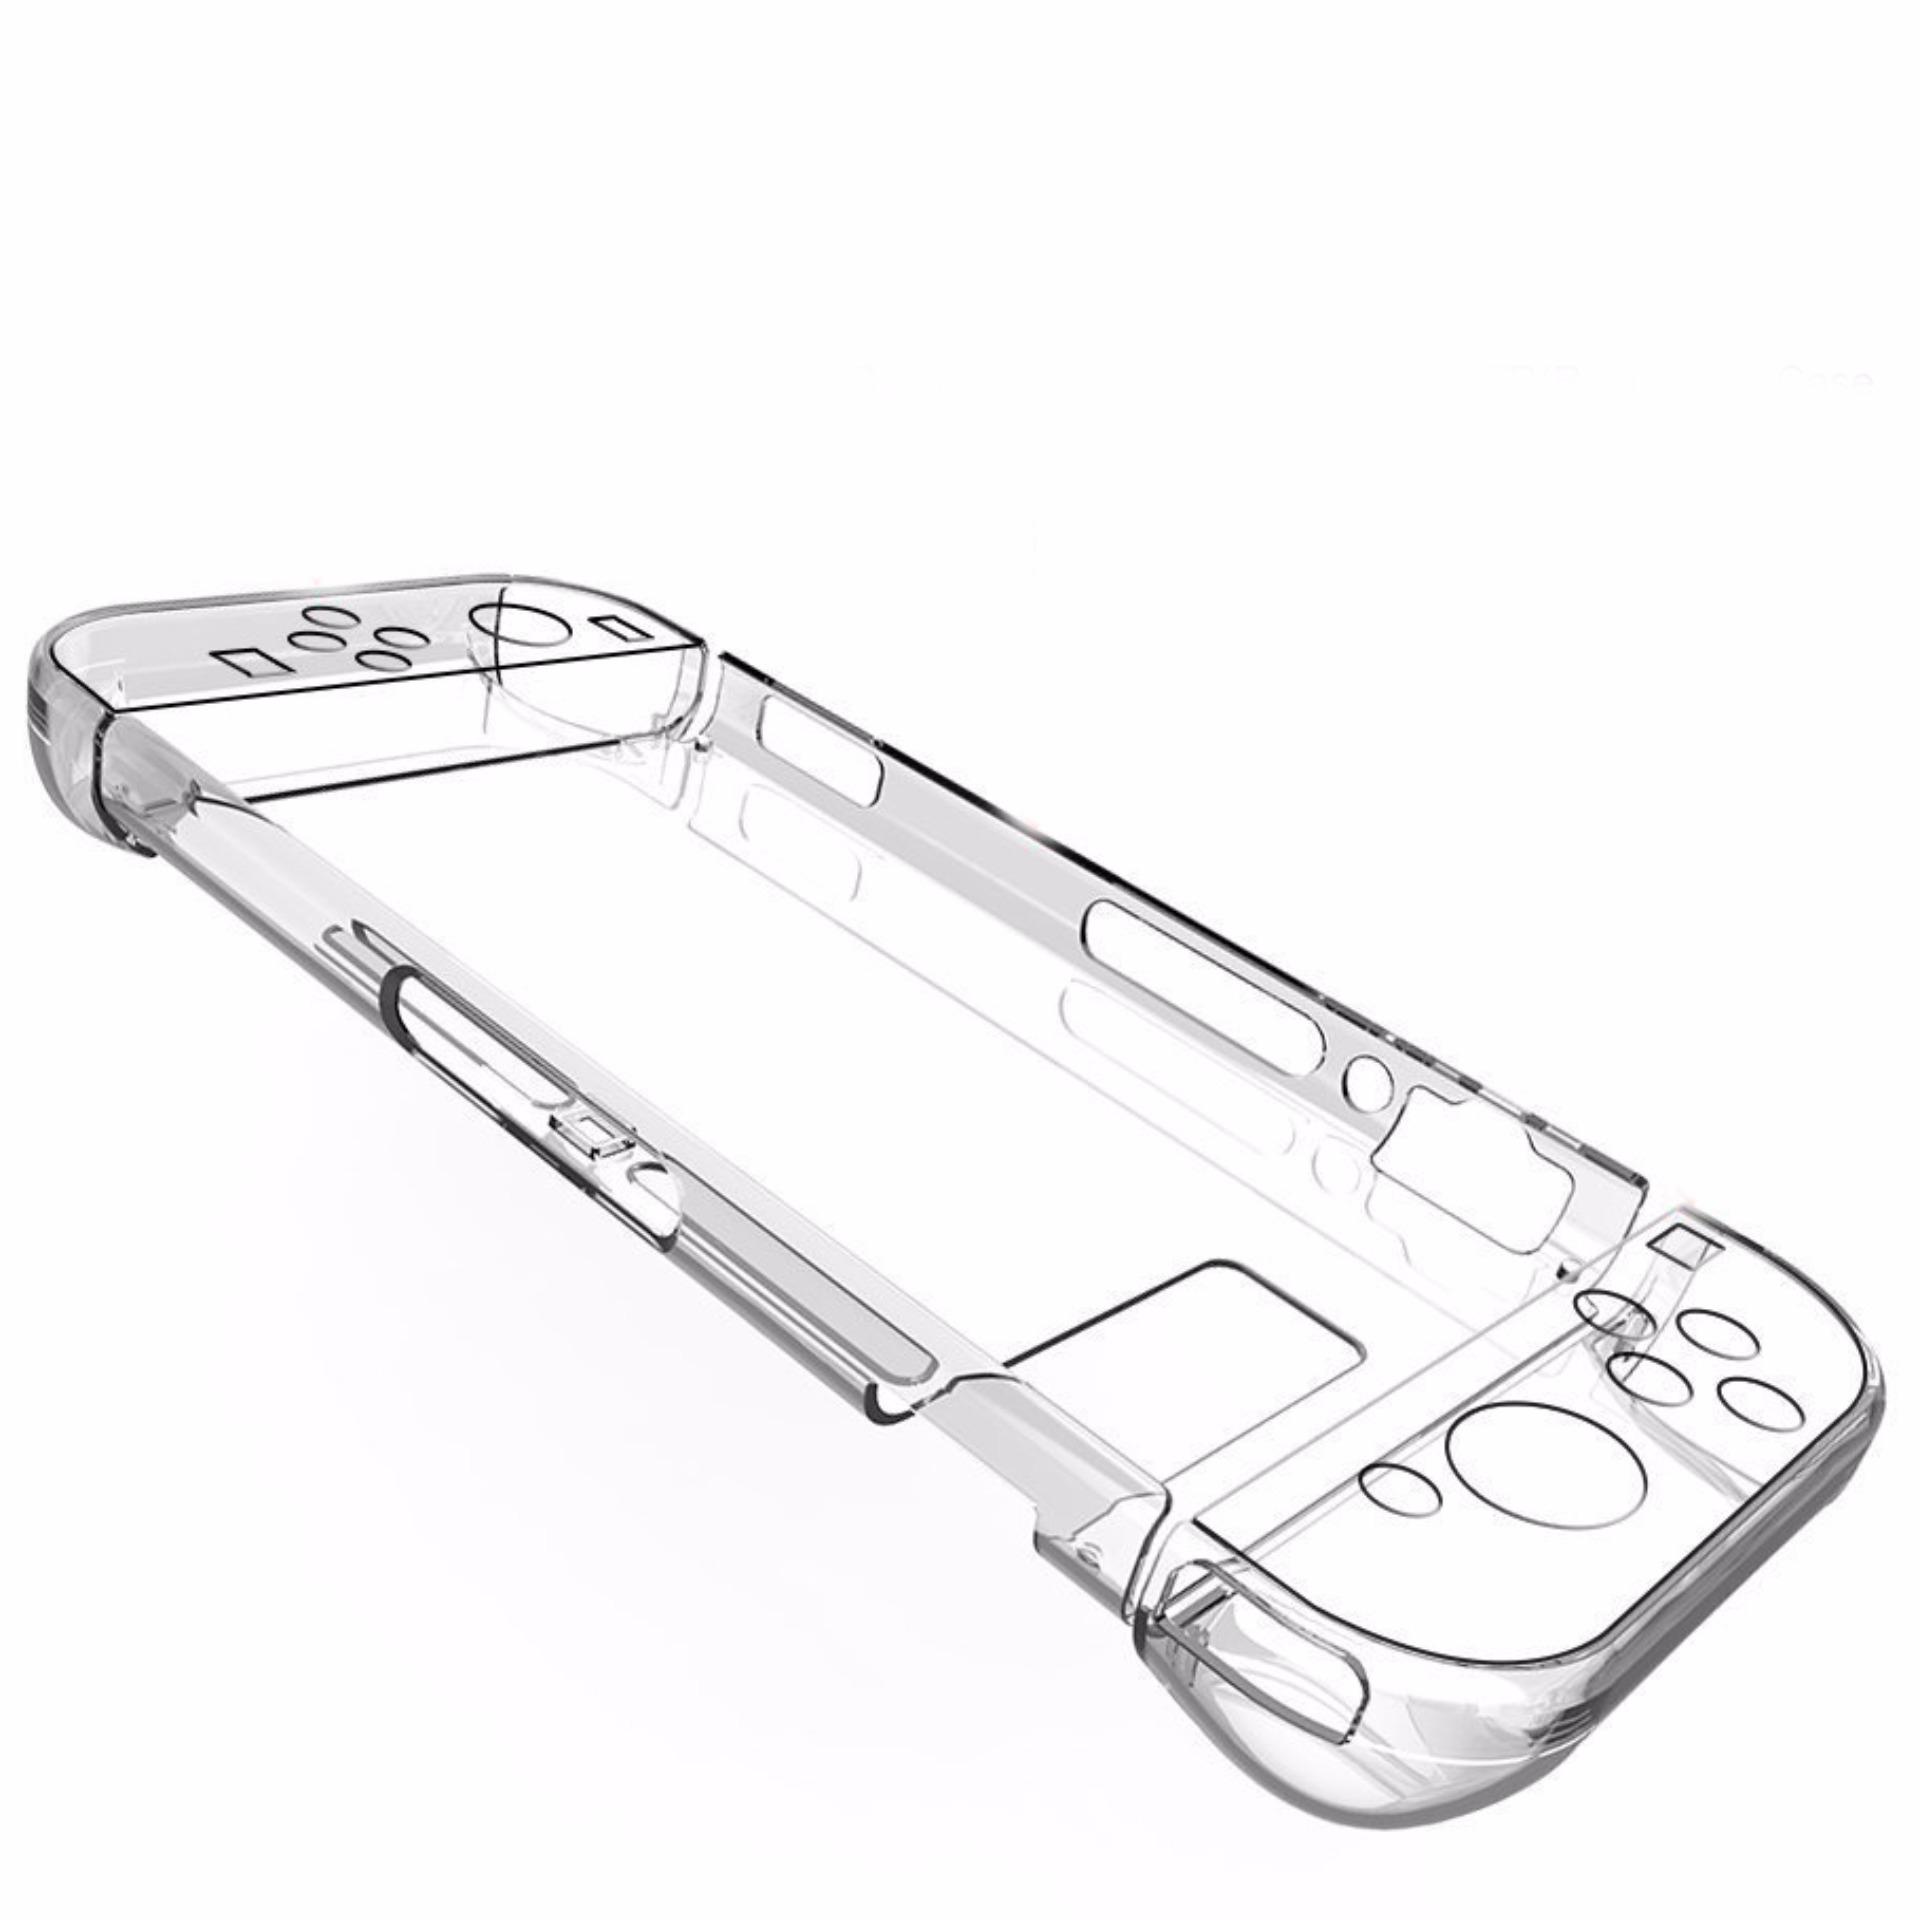 Bộ bọc Joy-Con và máy Nintendo Switch (Nhựa)